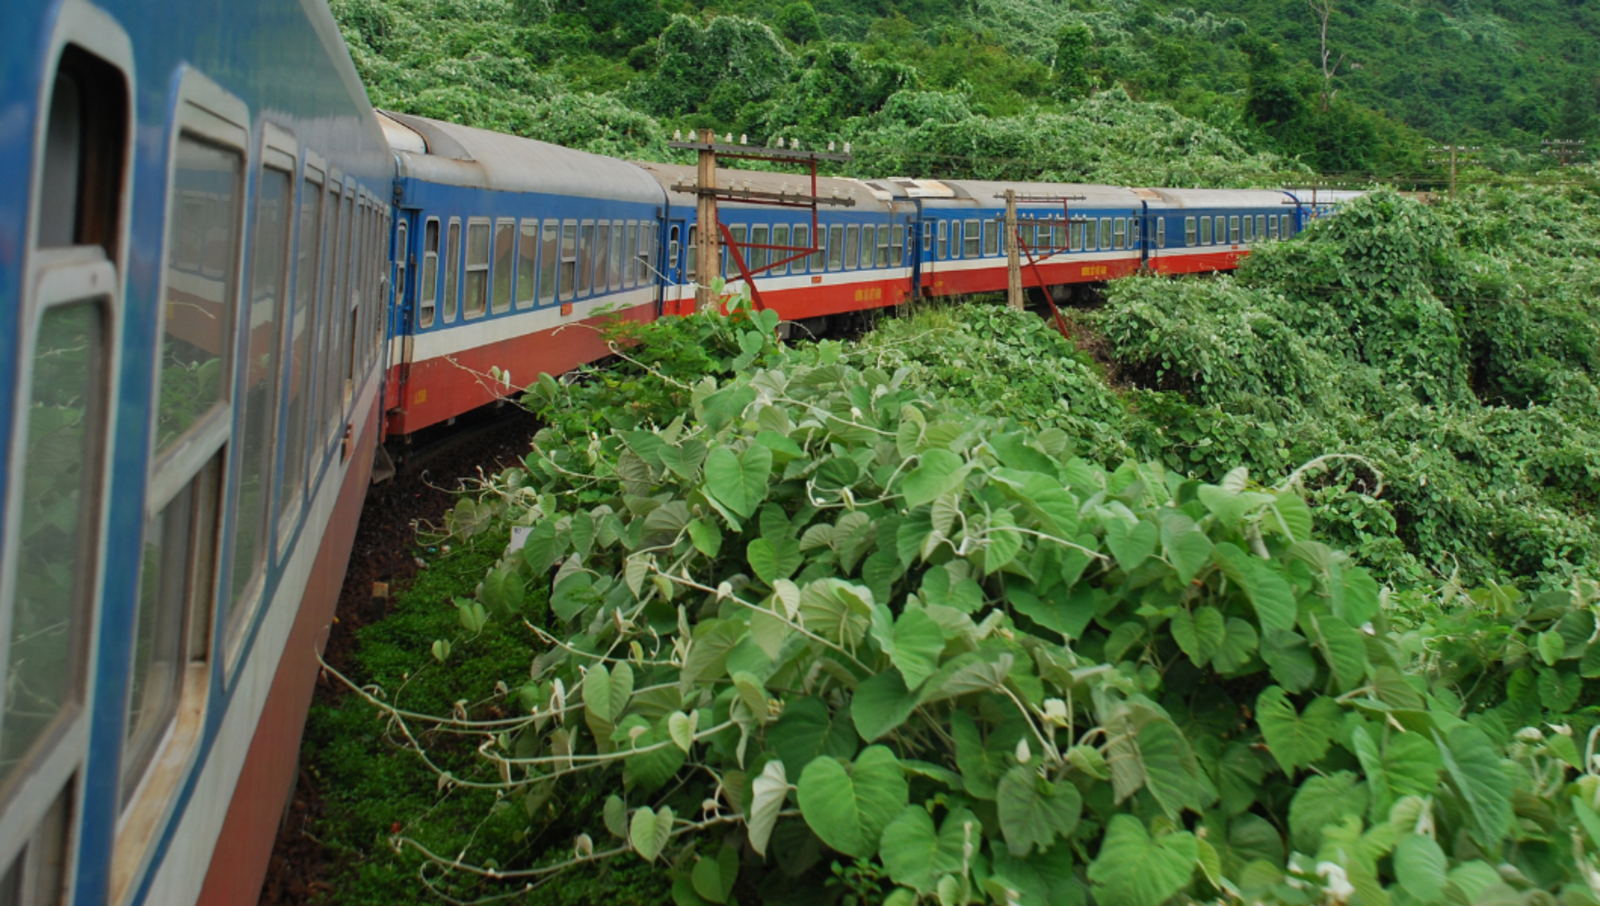 train in jungle in vietnam